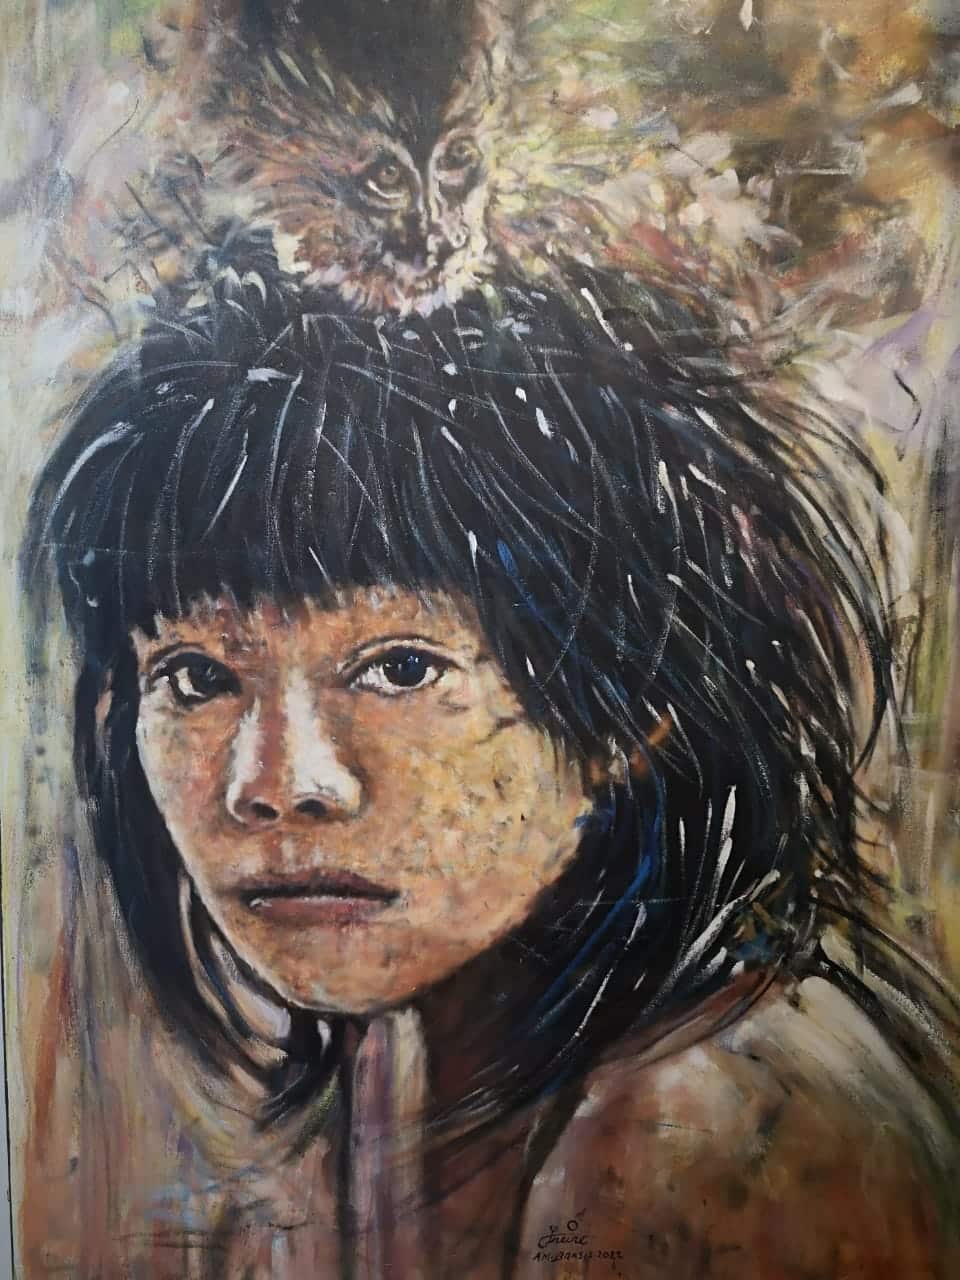 Dipinto fatto da una Tribù della foresta Amazzonica.